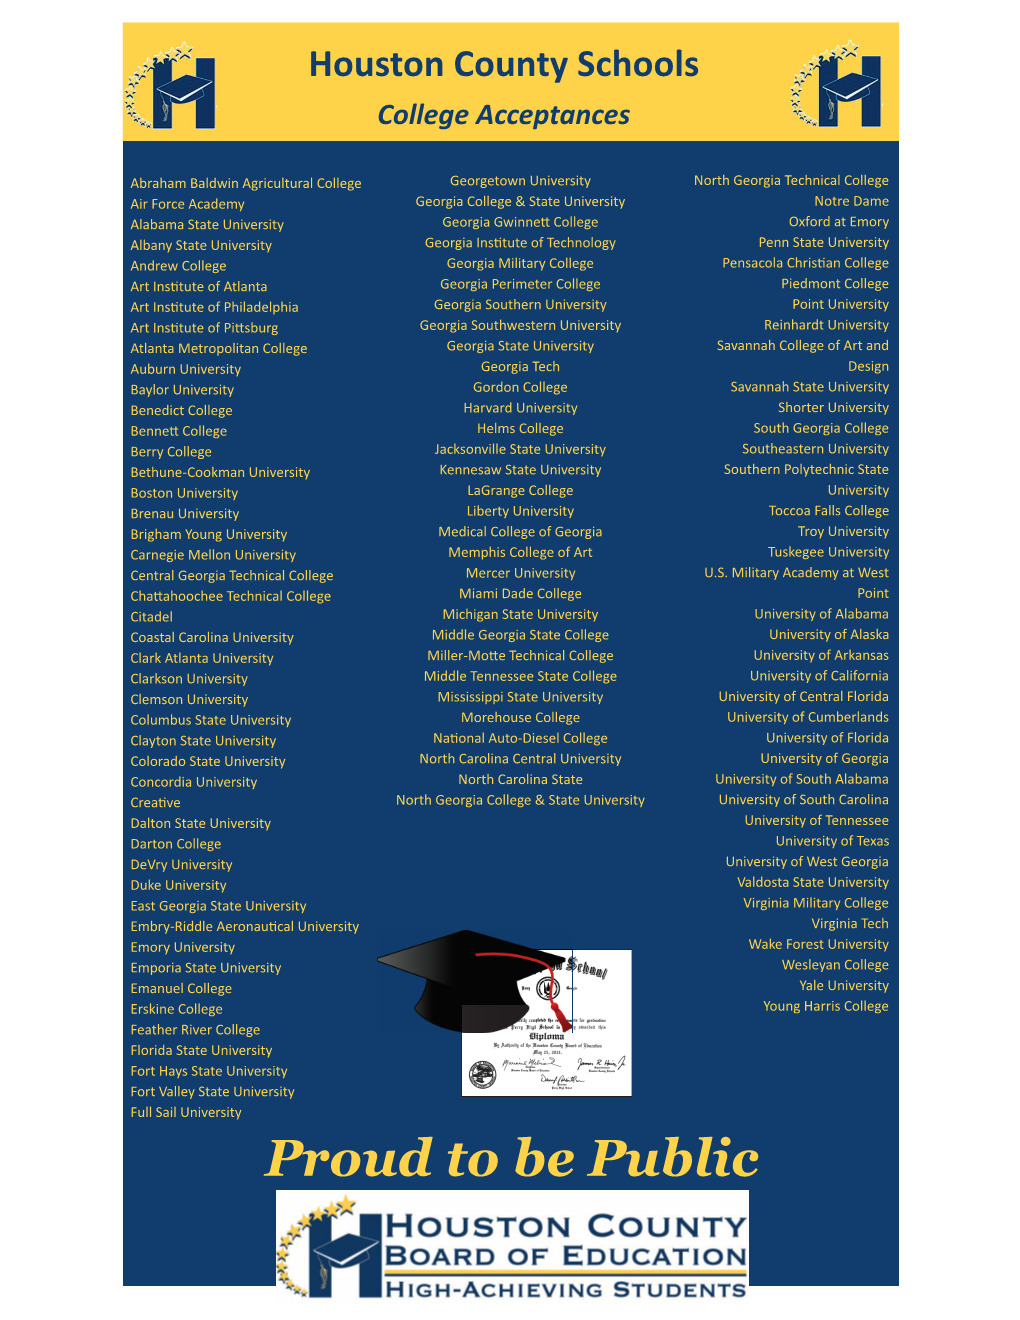 Proud to Be Public College Acceptances March 2018